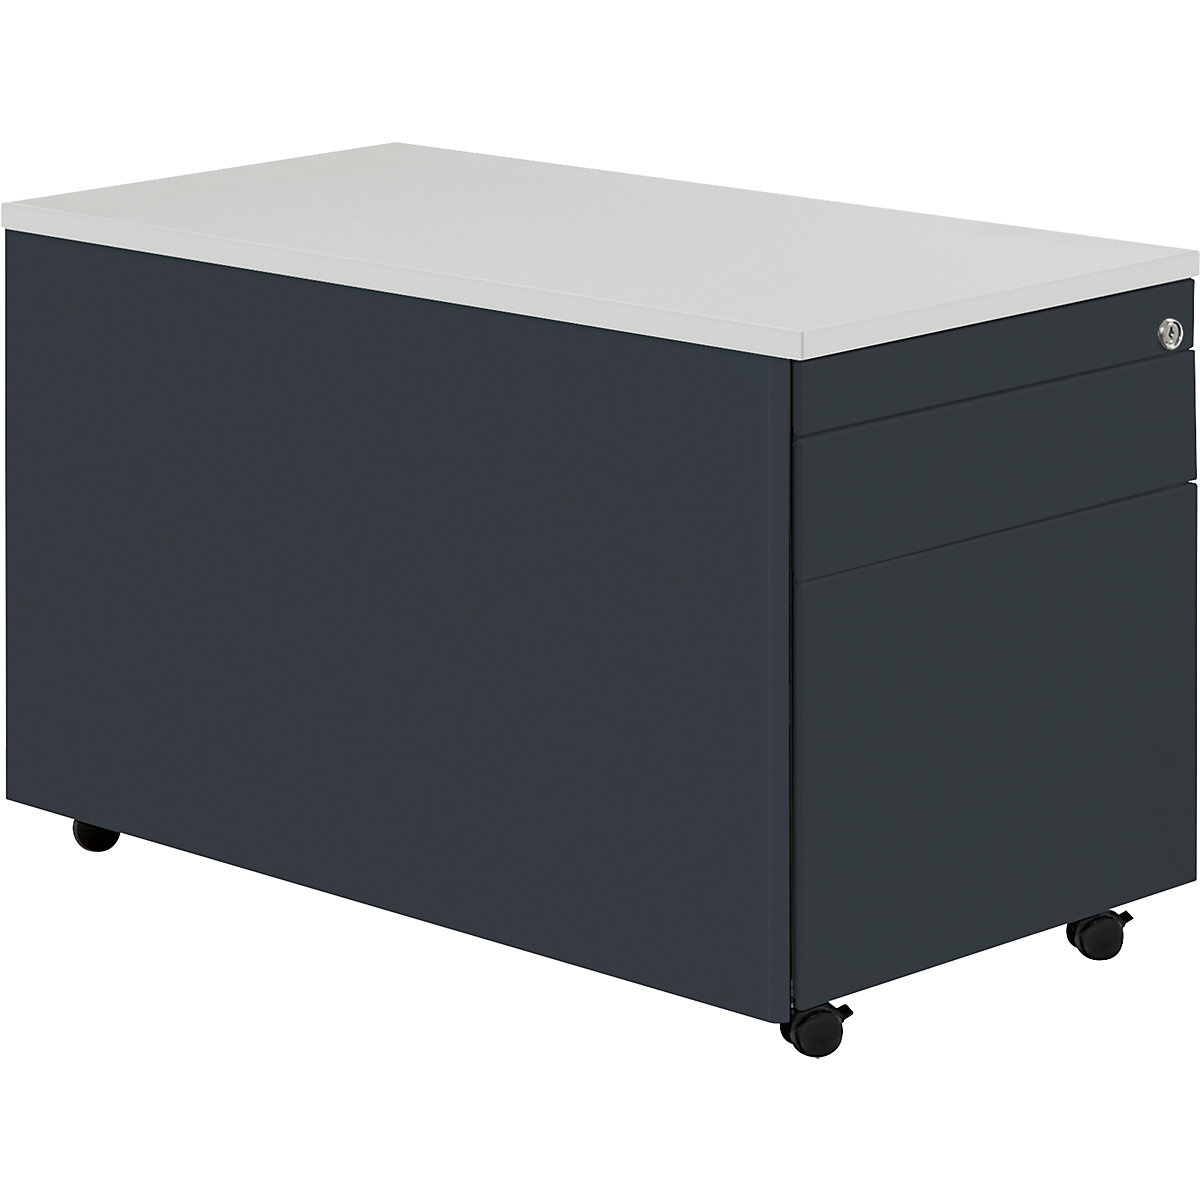 Zásuvkový kontejner s koly – mauser, v x h 529 x 800 mm, 1 zásuvka na materiál, 1 kartotéka pro závěsné složky, antracitově šedá / antracitově šedá / světle šedá-2